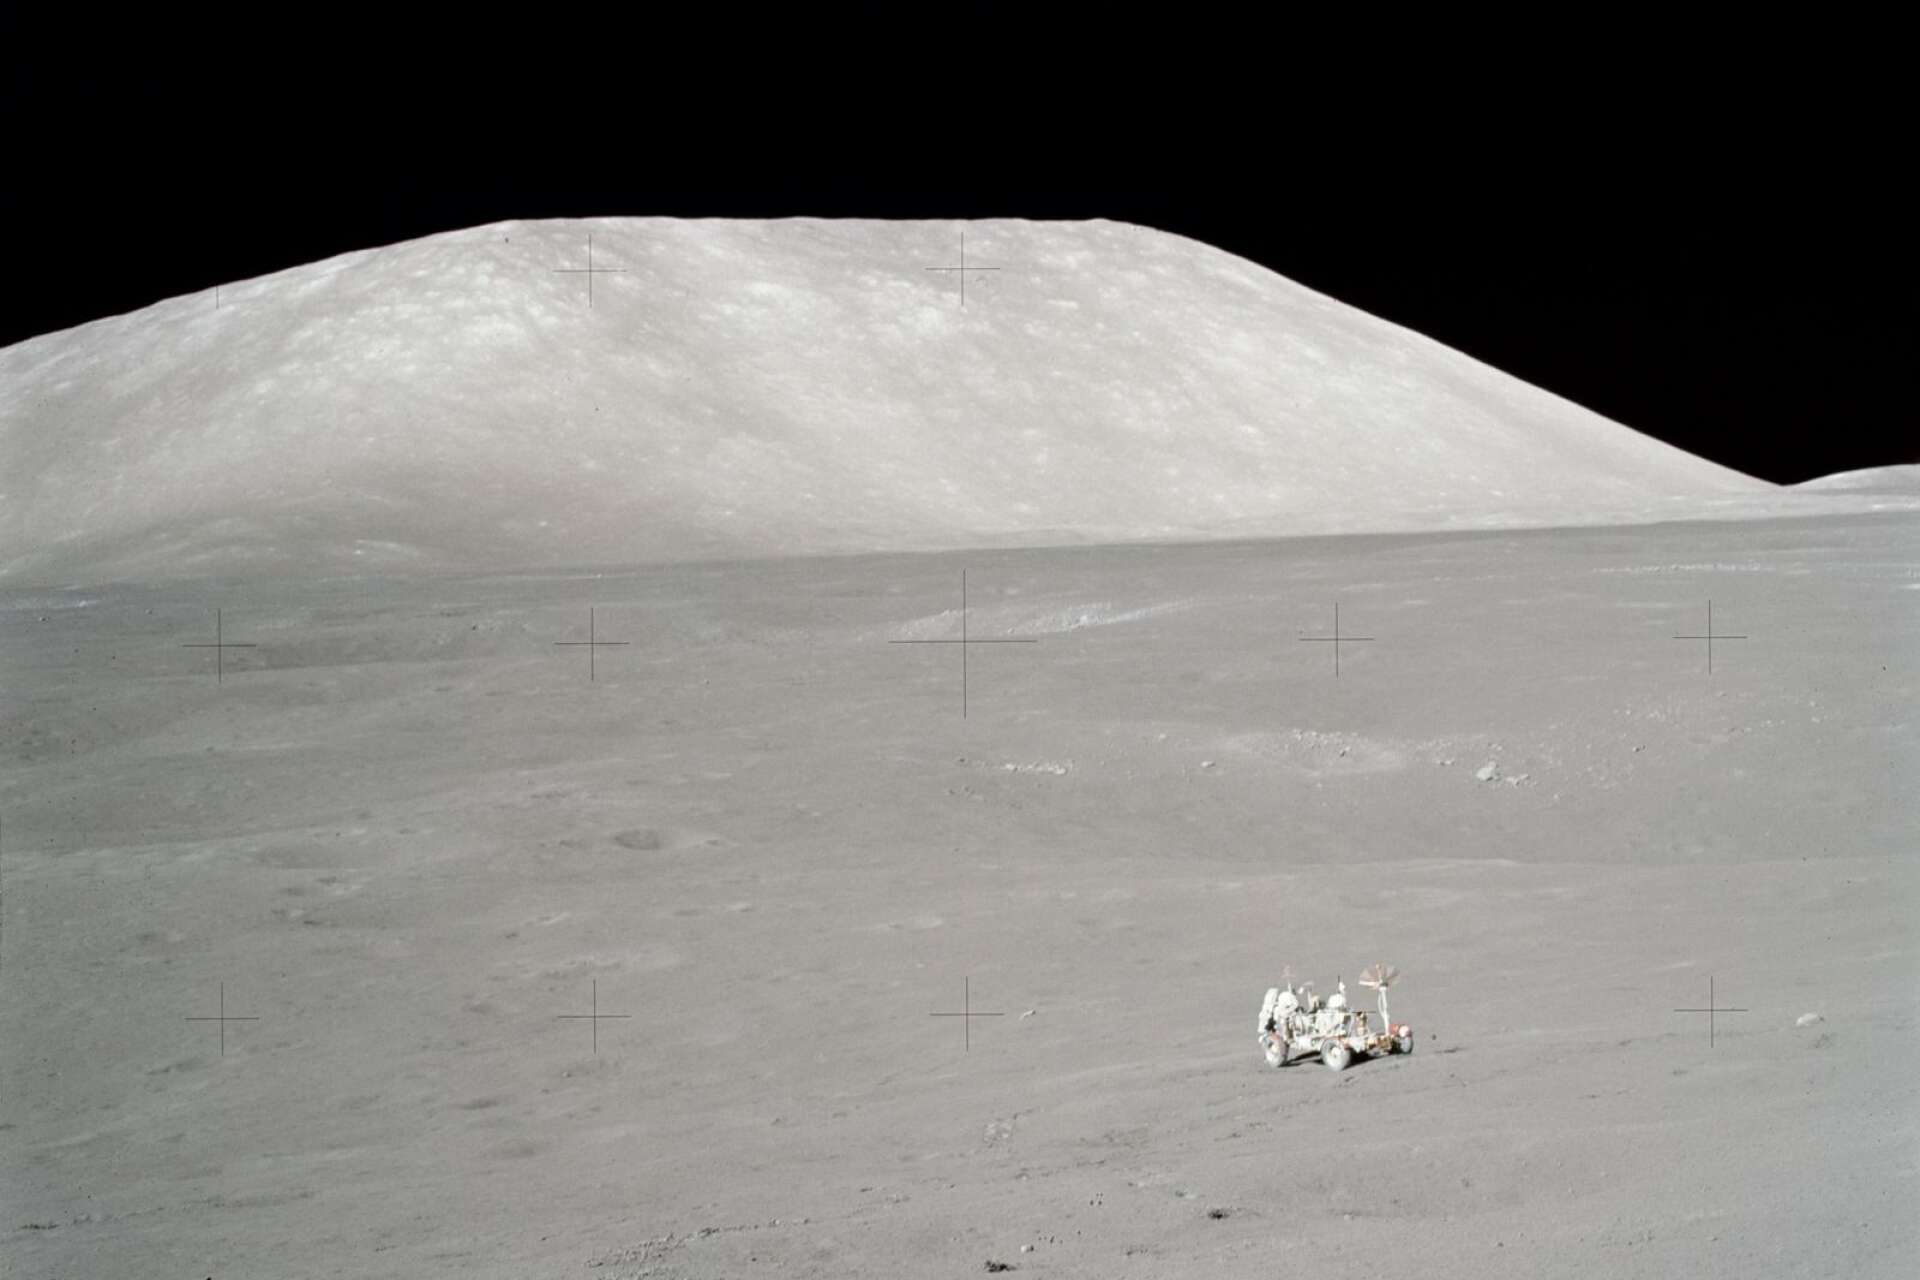 Schmitt vid månbilen med bergmassiv i bakgrunden.